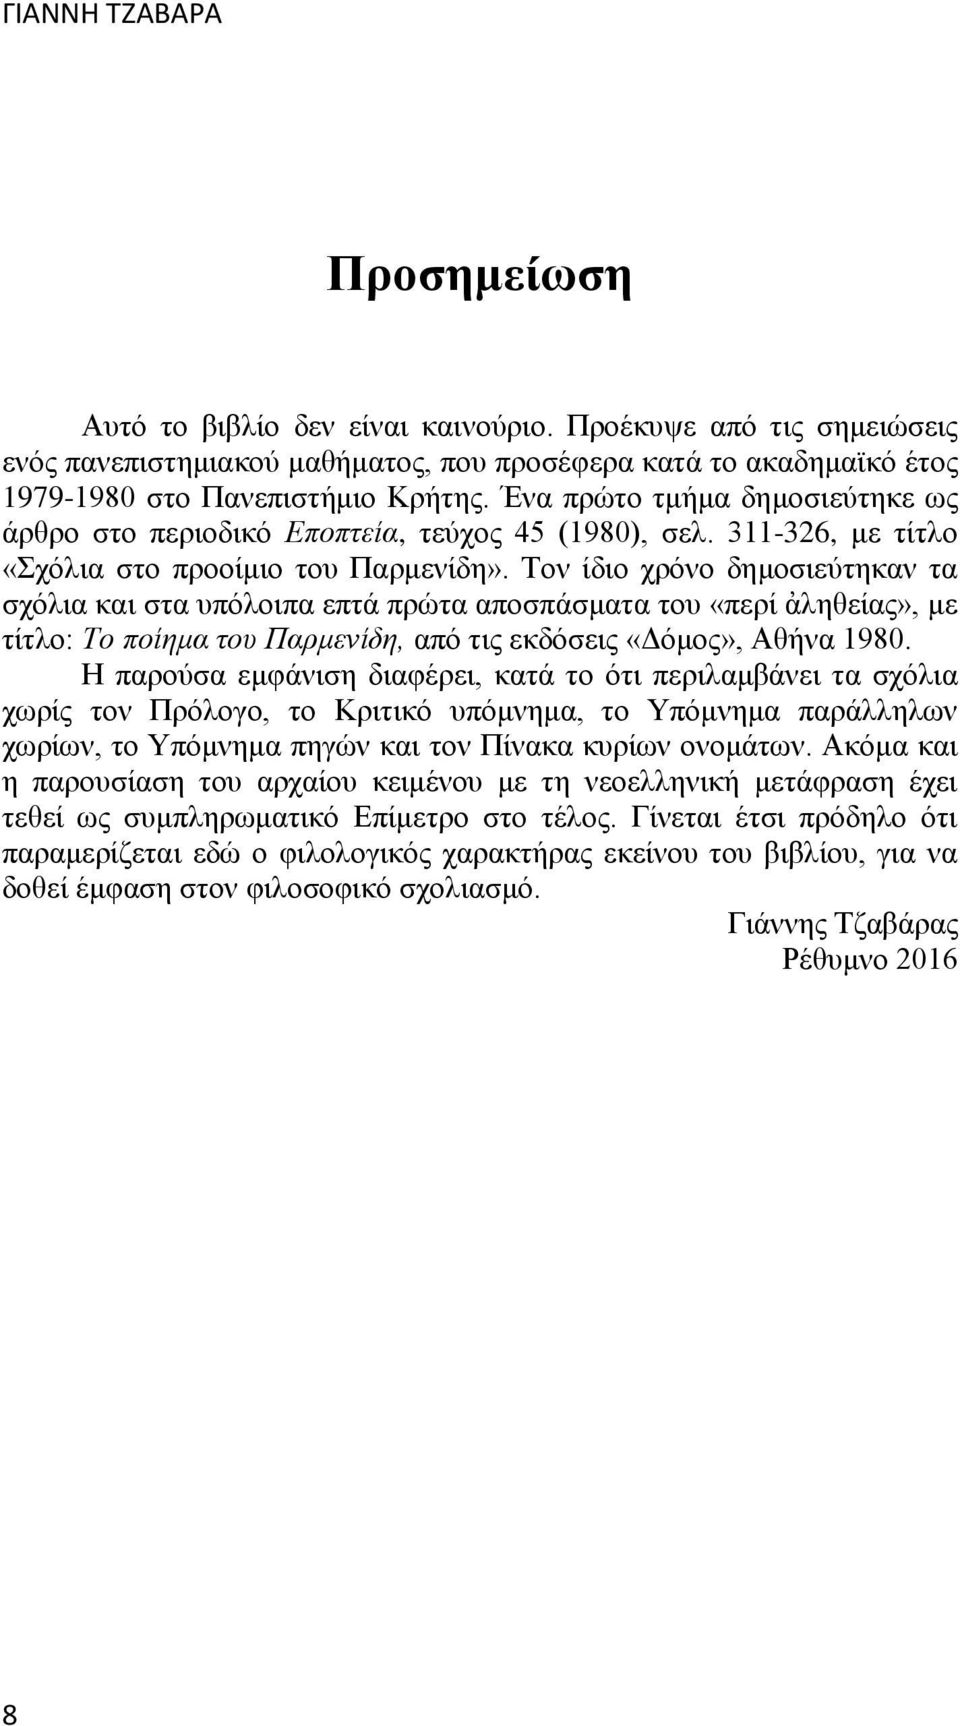 Τον ίδιο χρόνο δημοσιεύτηκαν τα σχόλια και στα υπόλοιπα επτά πρώτα αποσπάσματα του «περί ἀληθείας», με τίτλο: Το ποίημα του Παρμενίδη, από τις εκδόσεις «Δόμος», Αθήνα 1980.